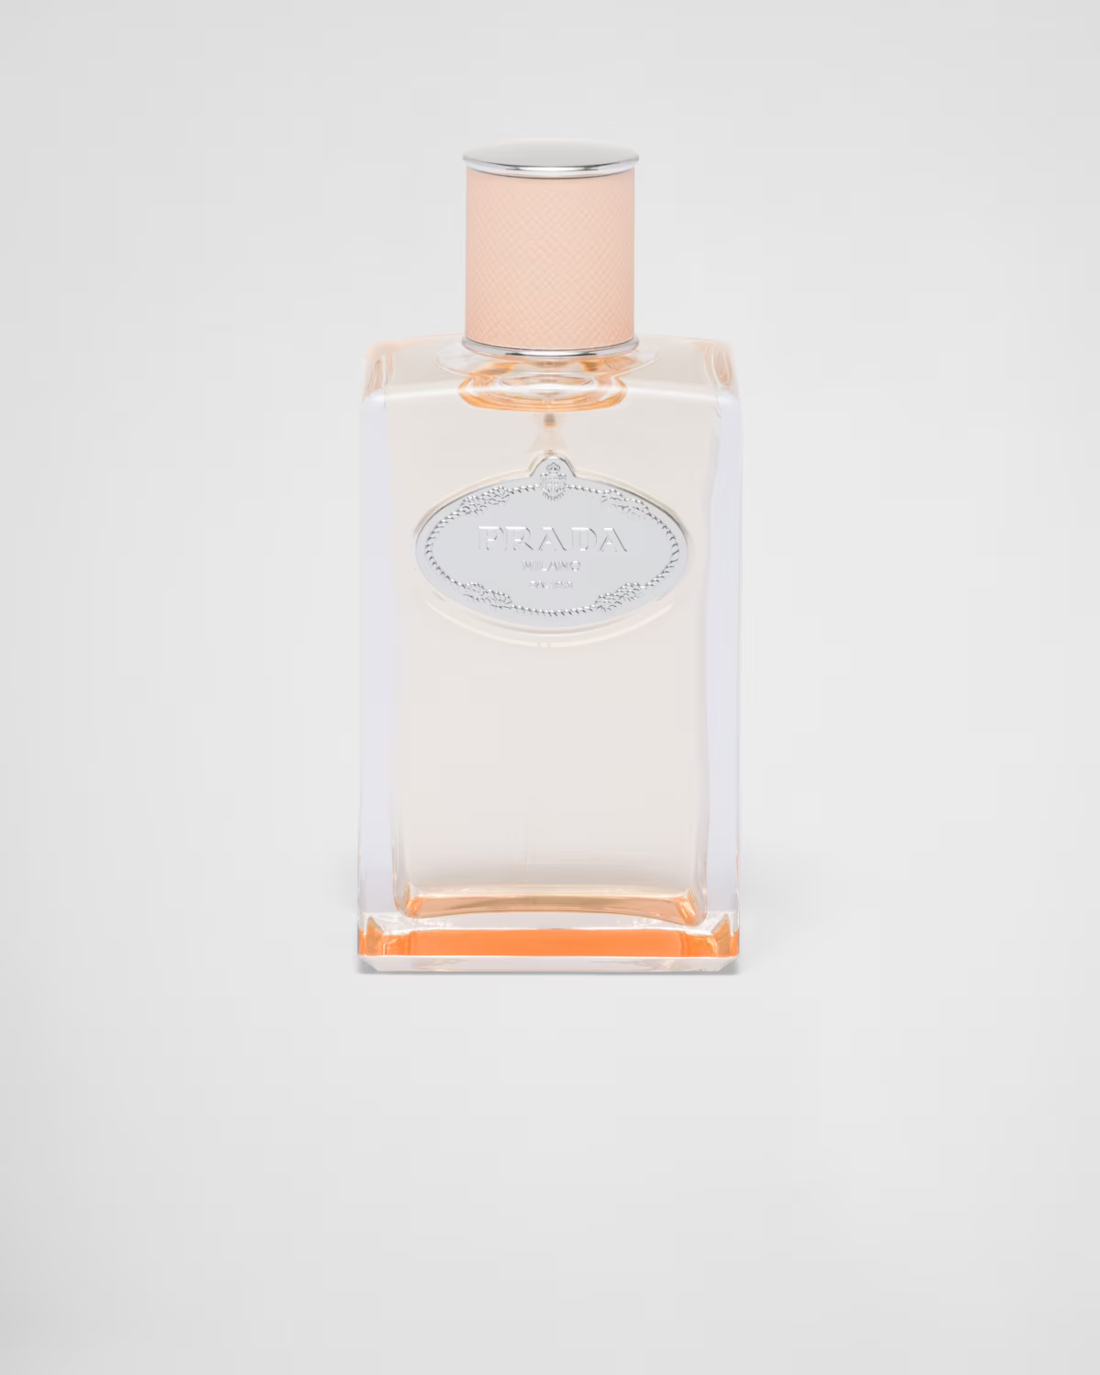 Hemos seleccionado nuestros perfumes favoritos para este verano con un toque de azahar: Infusion de Fleur d'Oranger de Prada